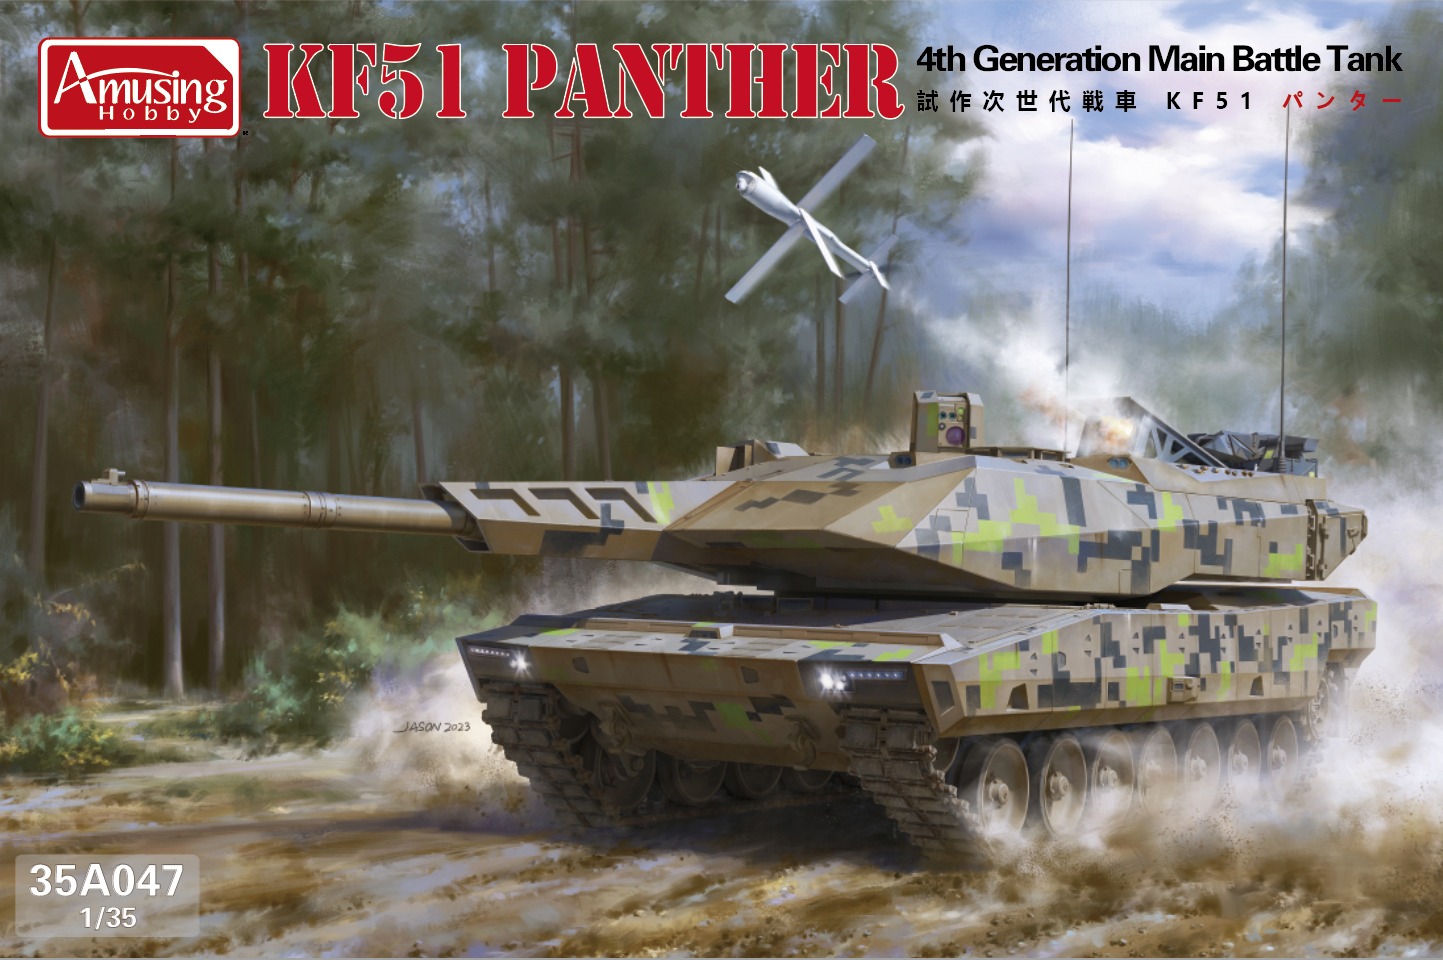 1/35 次世代主力戦車 KF51 パンター